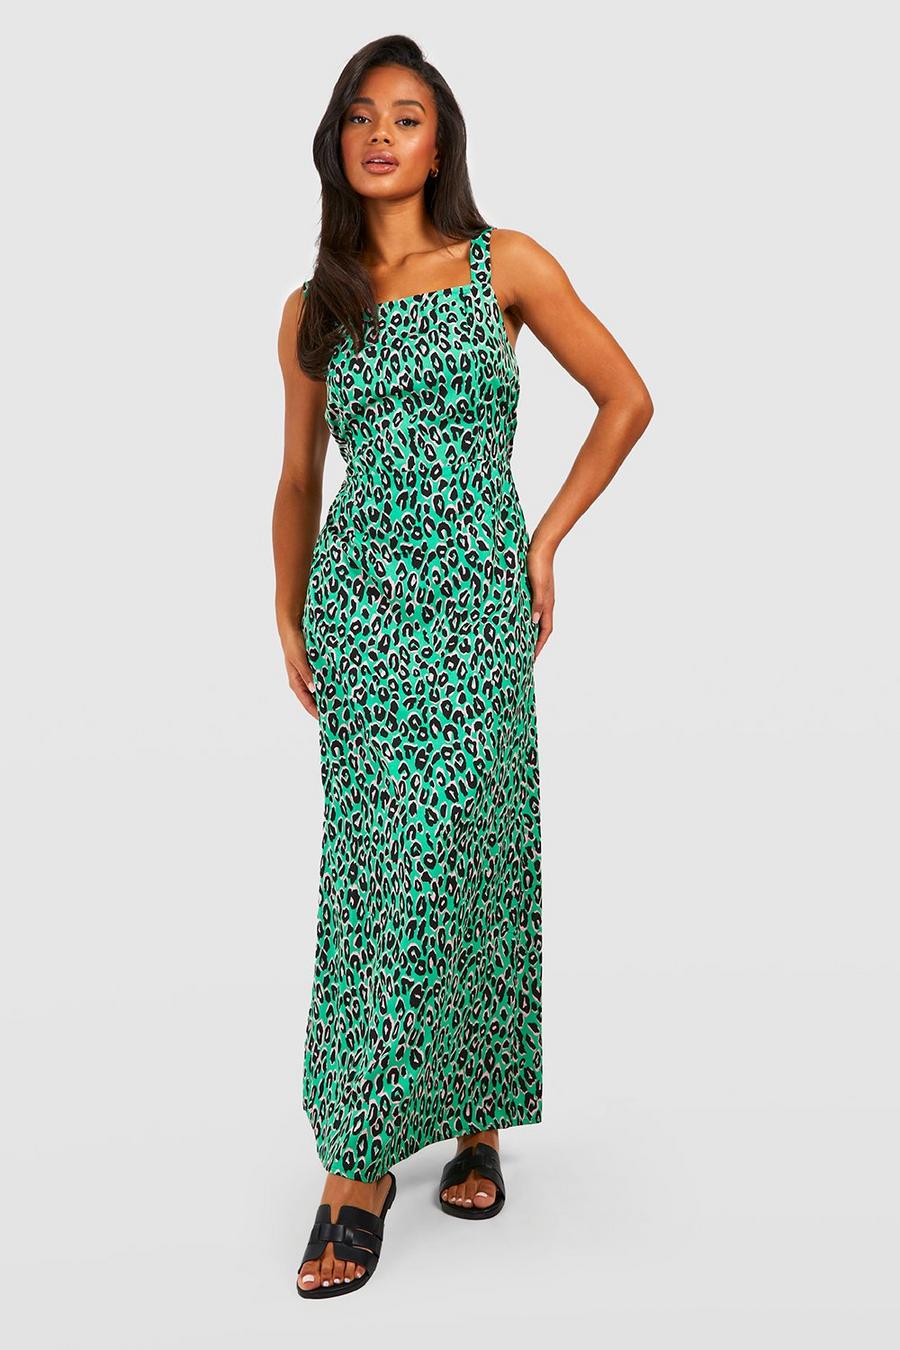 Green Leopard Print Strappy Maxi Dress